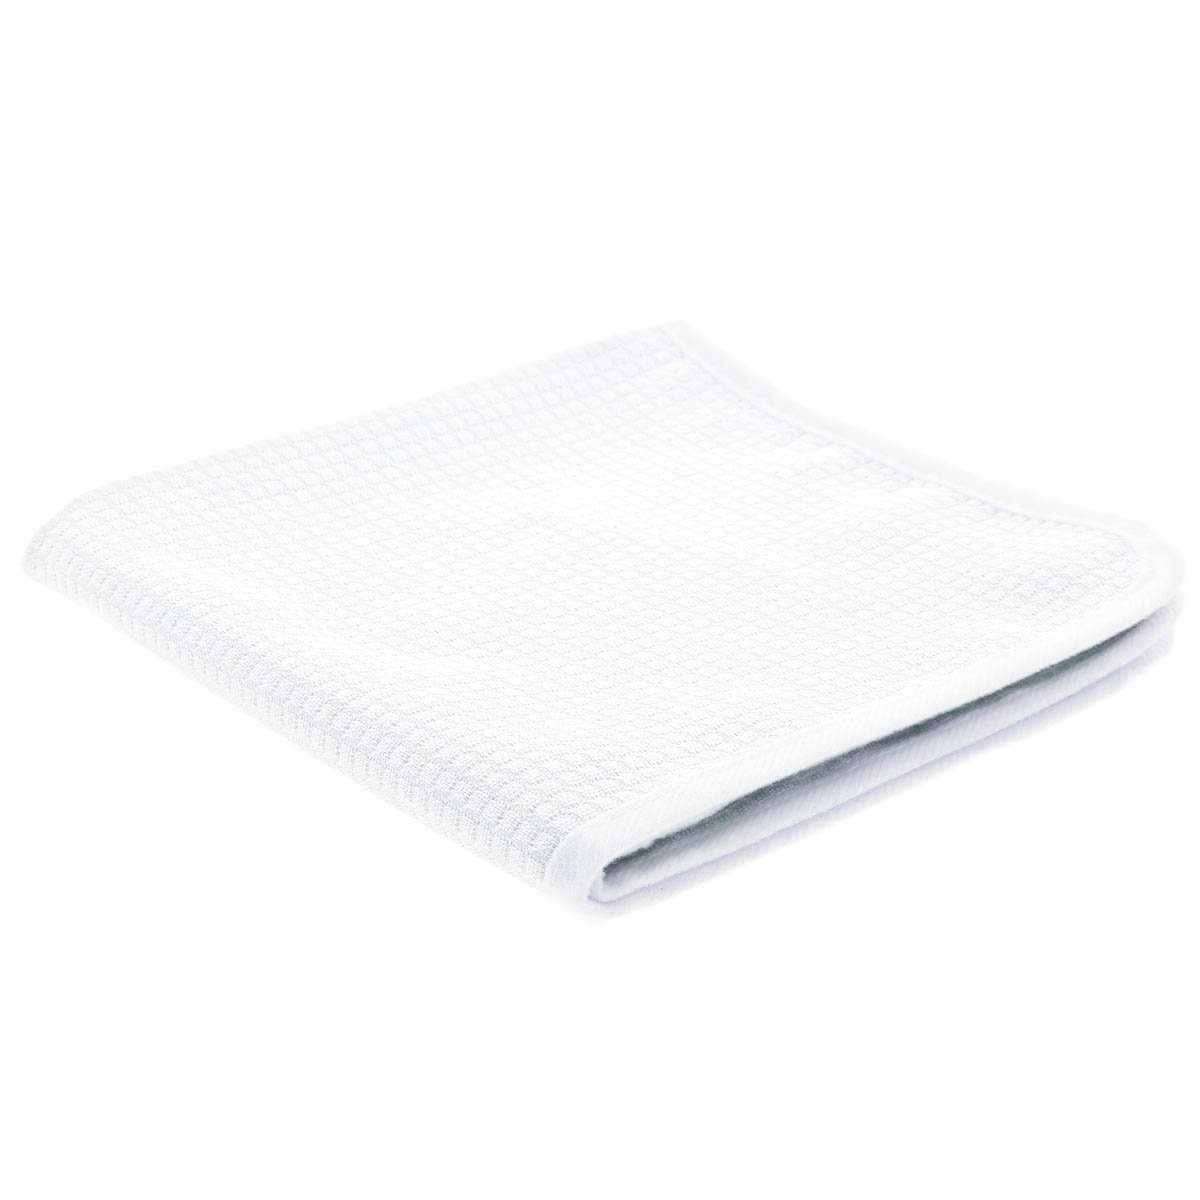 Vetro Superiore - Premium Glass Towel - 45x45 cm